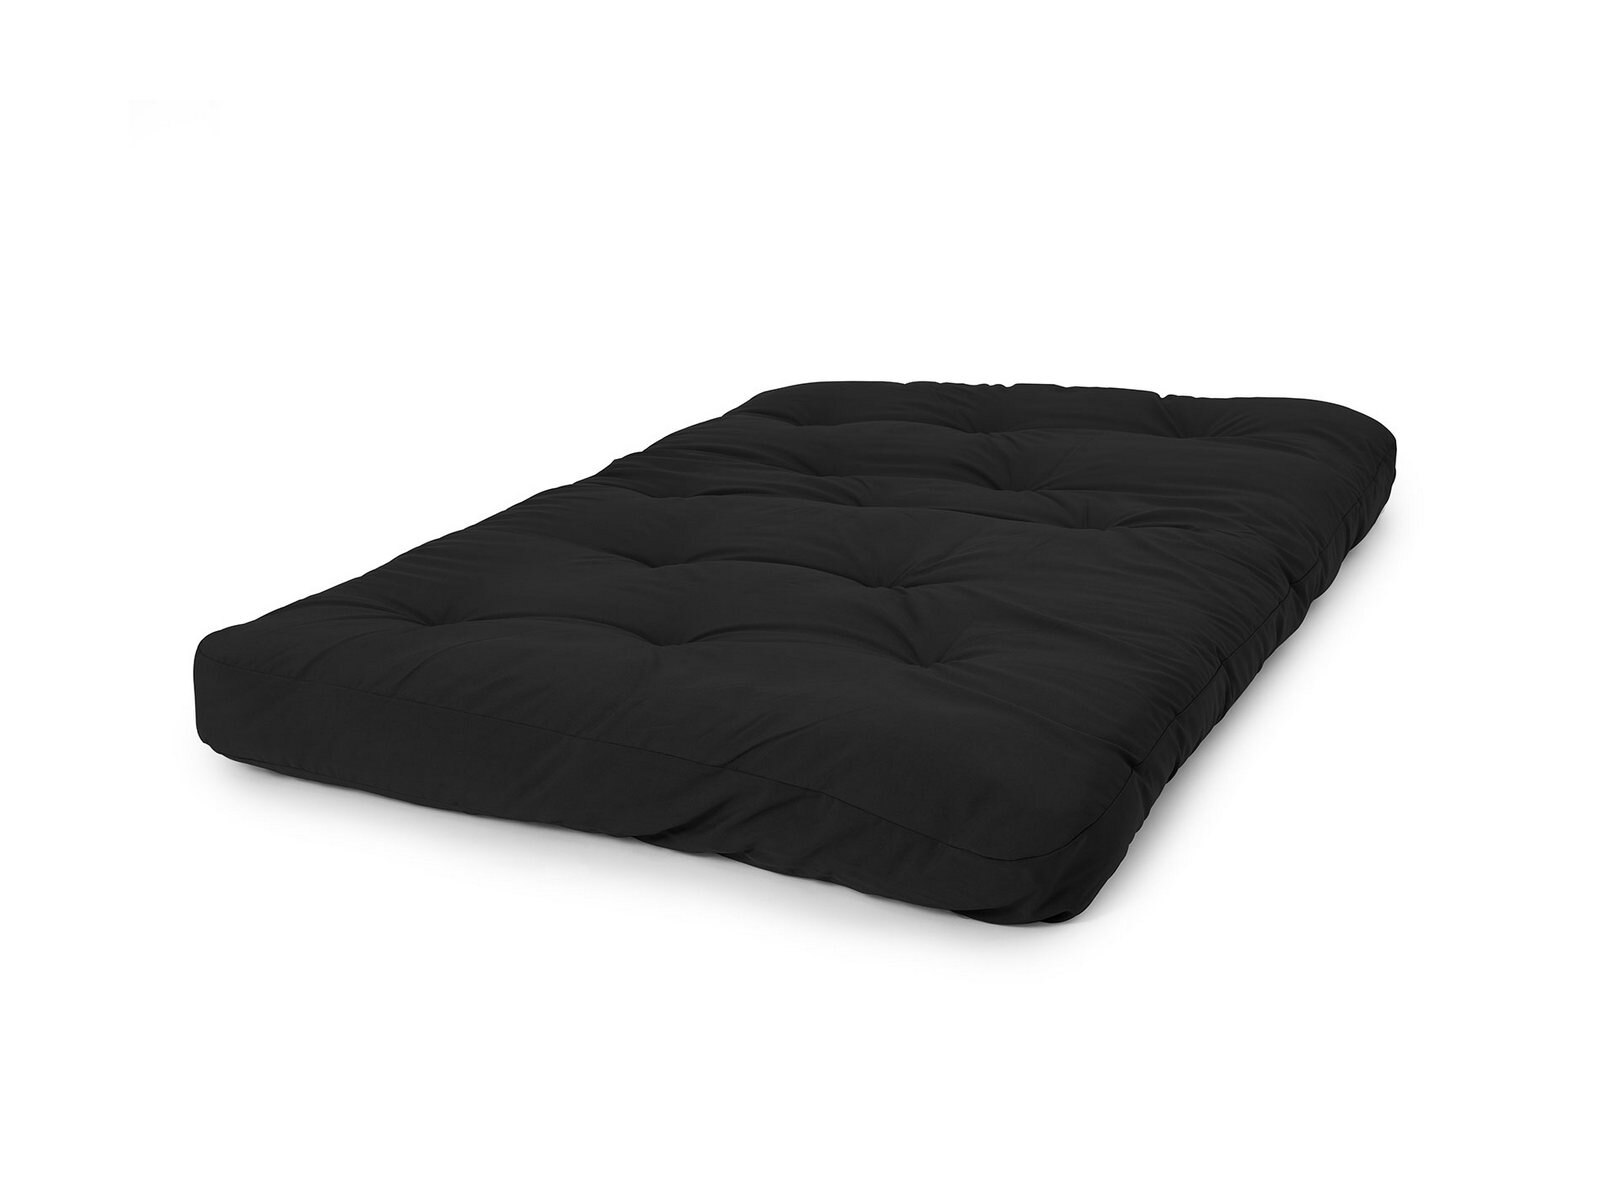 donco liberty 8 futon mattress review